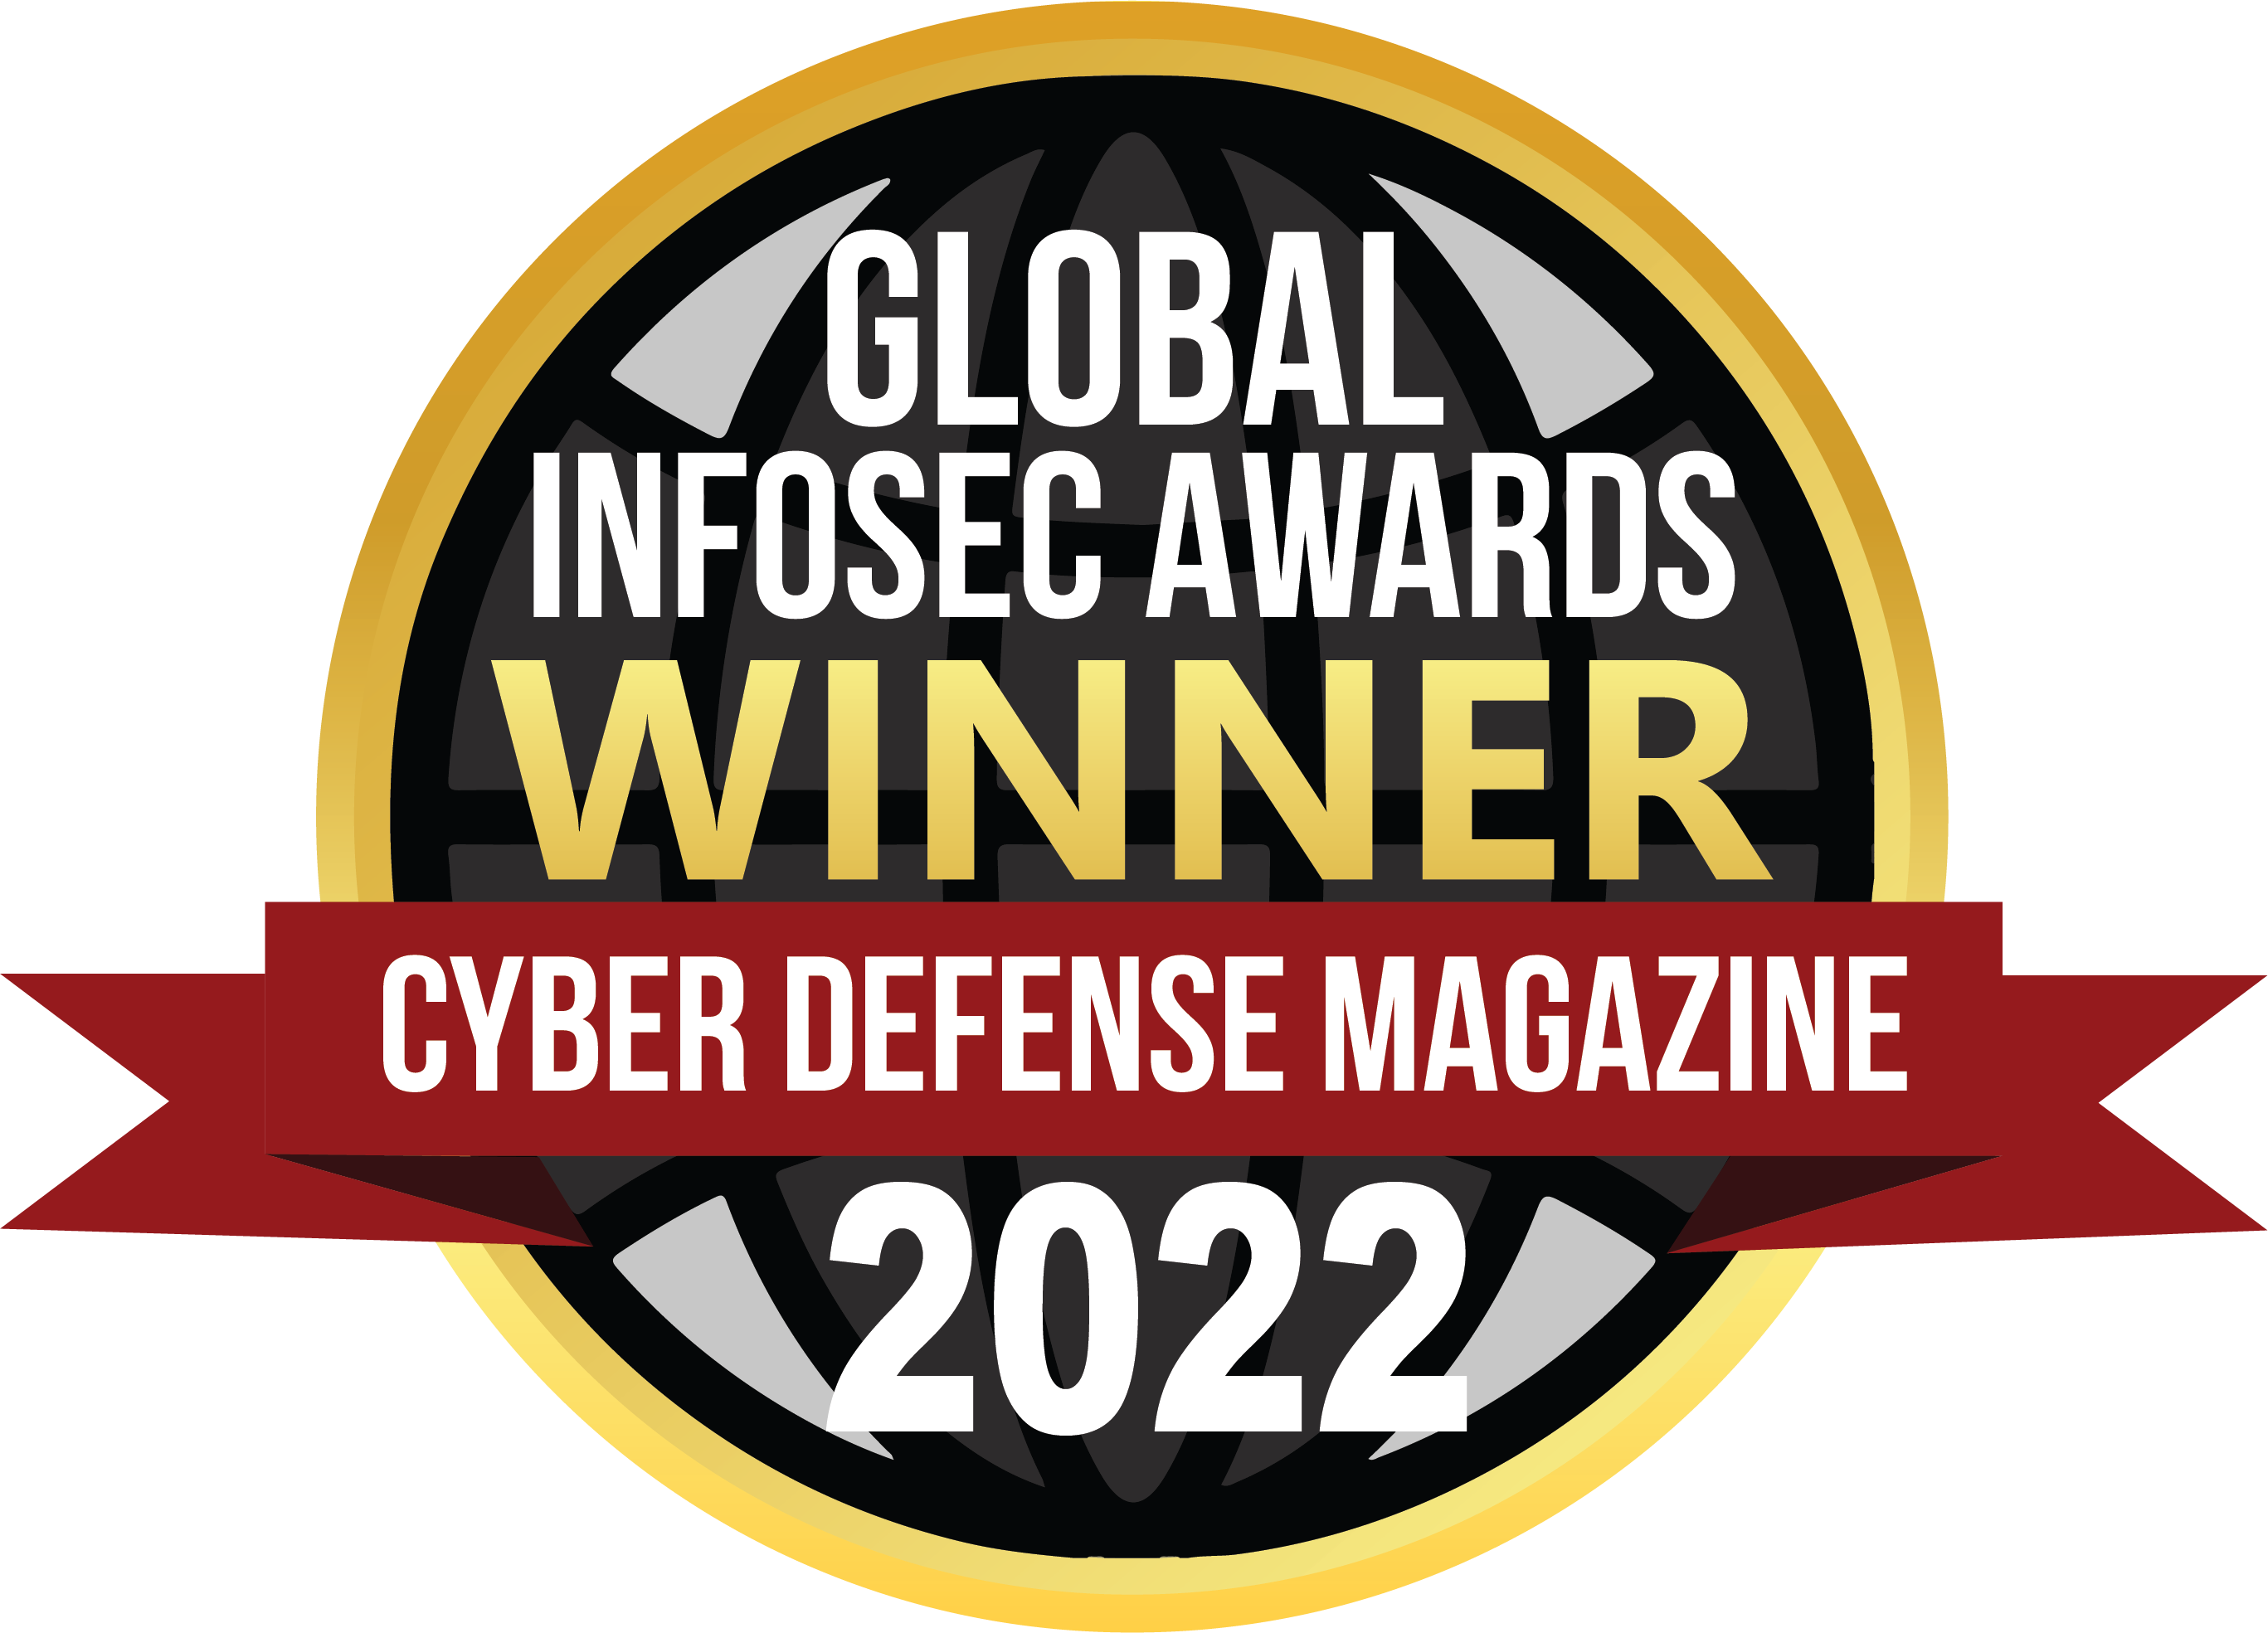 Cyber Defense Magazine Global InfoSec Awards: 2022 Winner